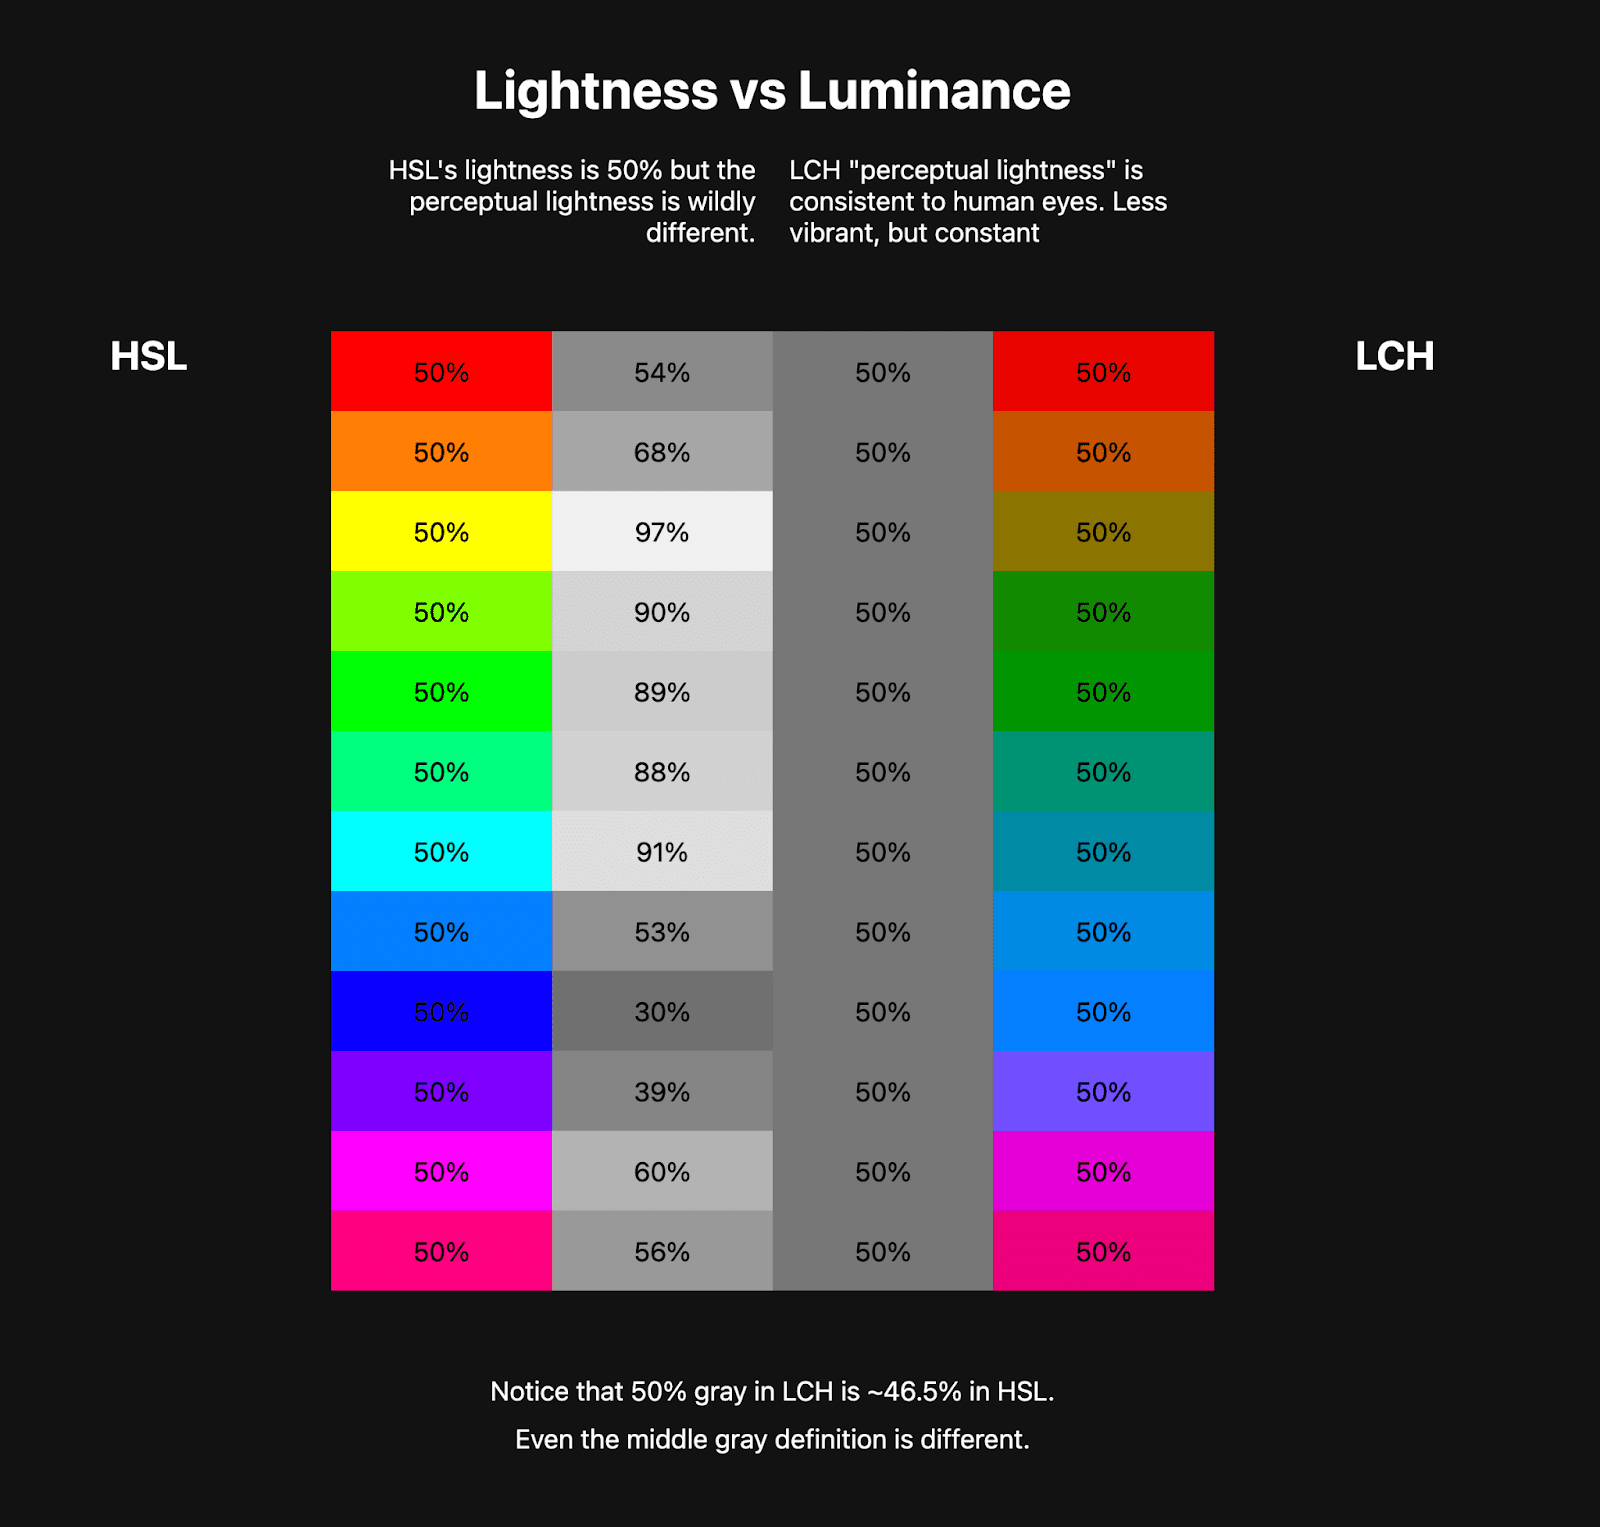 Hai bảng màu nằm cạnh nhau. Bảng đầu tiên cho thấy một cầu vồng HSL có khoảng 10 màu và bên cạnh là các màu thang màu xám thể hiện độ sáng của các màu HSL đó. Bảng thứ hai cho thấy cầu vồng LCH,
    kém rực rỡ hơn nhiều, nhưng các màu thang màu xám bên cạnh cầu vồng nhất quán.
    Đây là cách cho thấy LCH có giá trị độ sáng ổn định liên tục trong khi HSL thì không.